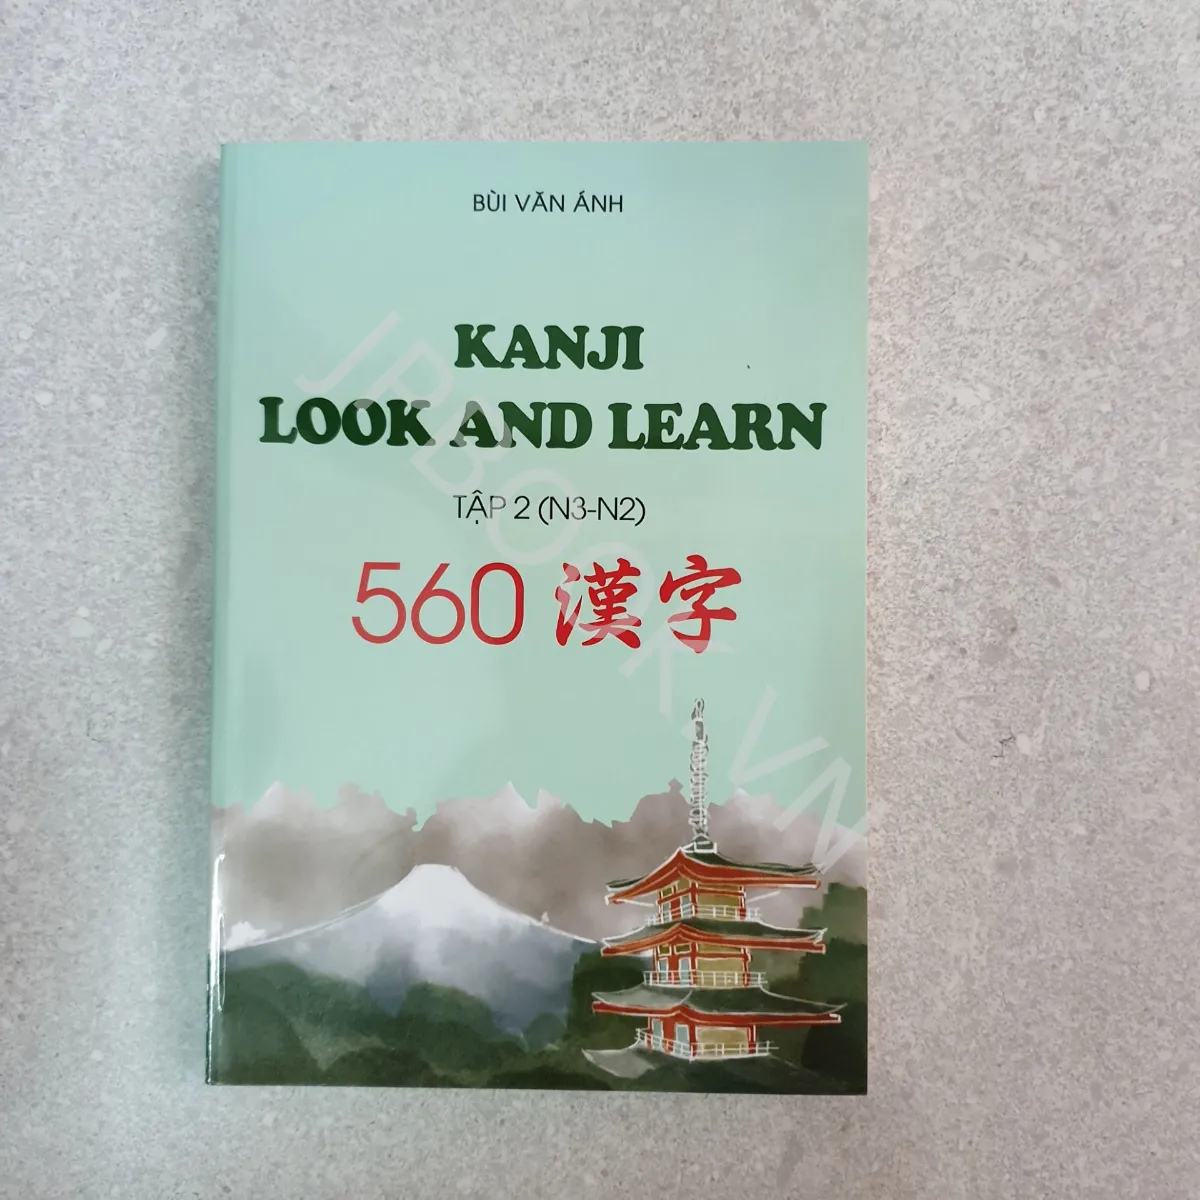 Kanji Look And Learn 560 Tập 2 N3 N2 | Jpbook